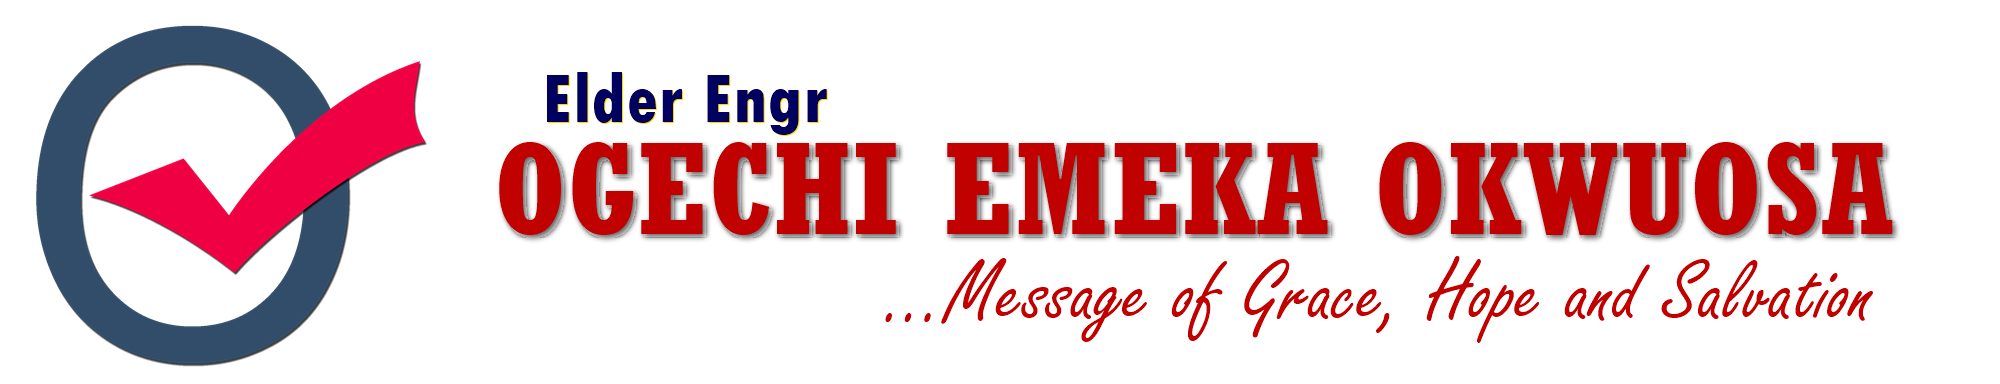 Elder Engr Ogechi Emeka Okwuosa Logo - Message of Grace, Hope and Salvation